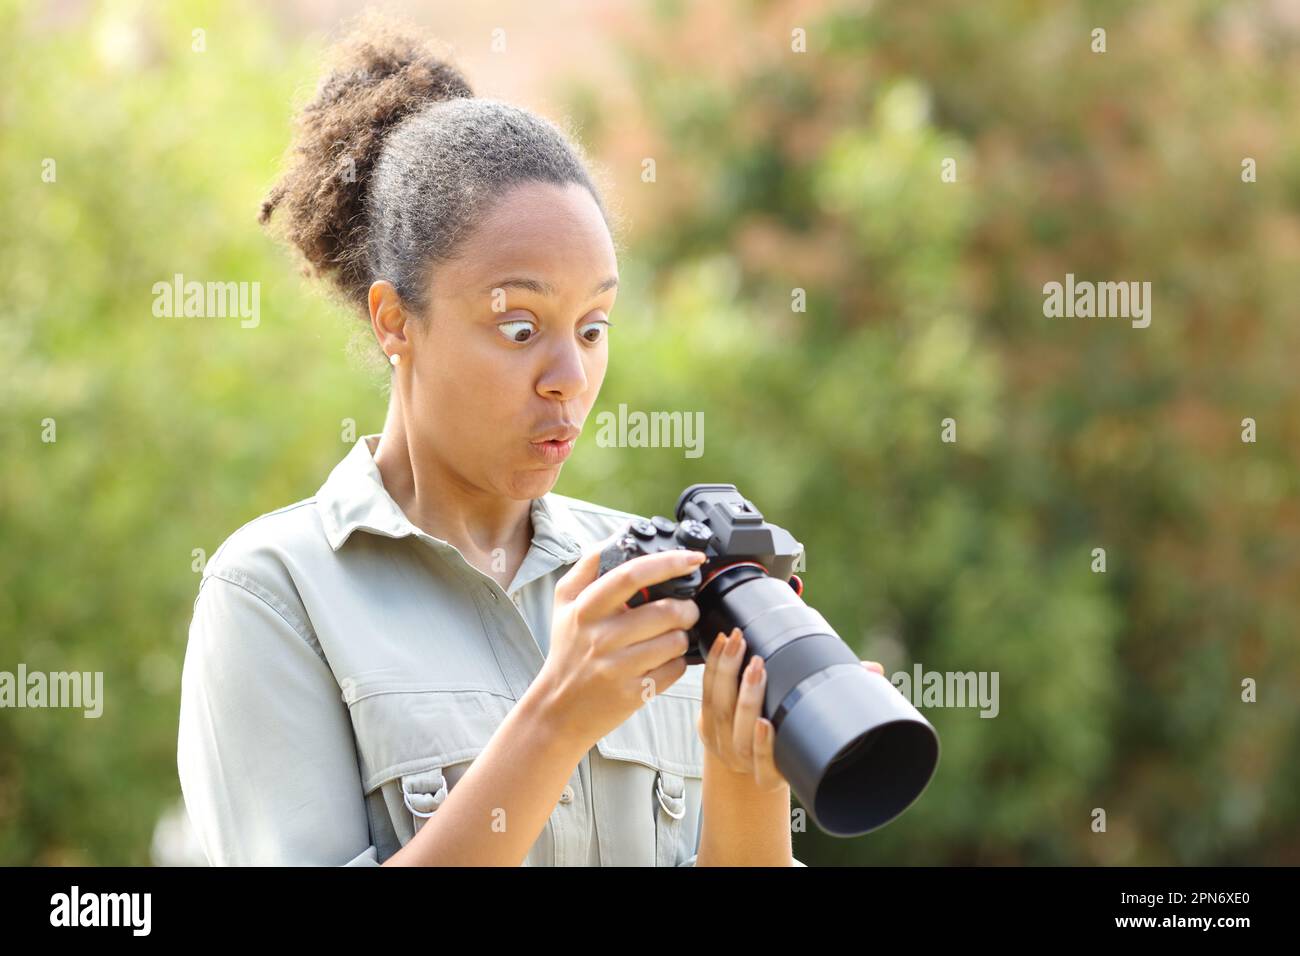 Überraschter schwarzer Fotograf, der Fotos auf einer spiegellosen Kamera in einem Park überprüft Stockfoto